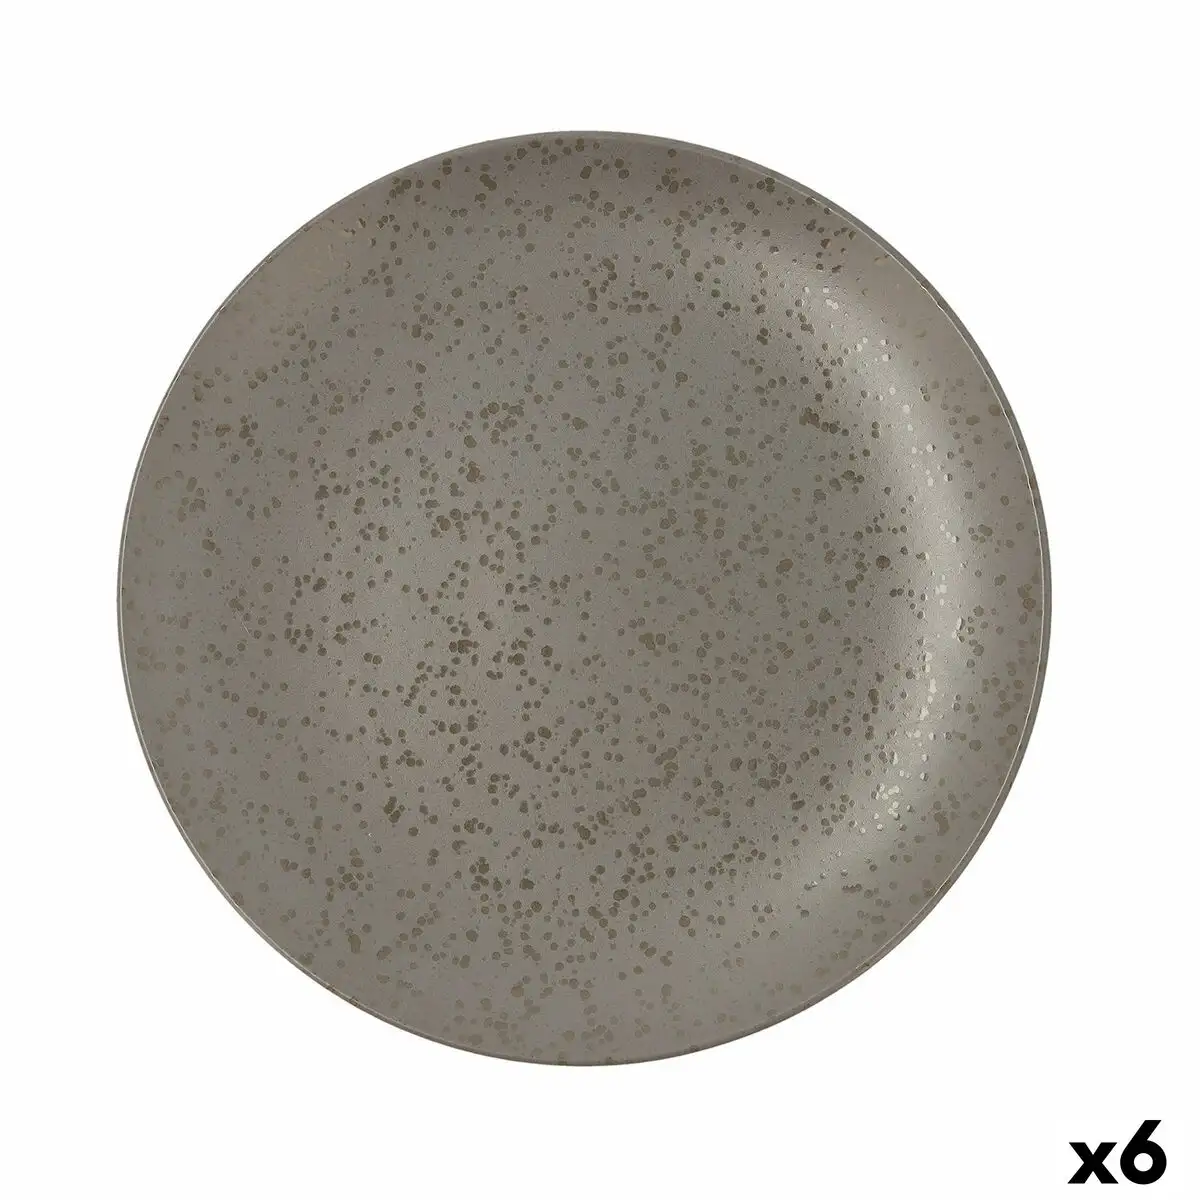 Assiette plate ariane oxide ceramique gris o 31 cm 6 unites _6289. DIAYTAR SENEGAL - Où Choisir est un Plaisir. Explorez notre boutique en ligne et choisissez parmi des produits de qualité qui satisferont vos besoins et vos goûts.